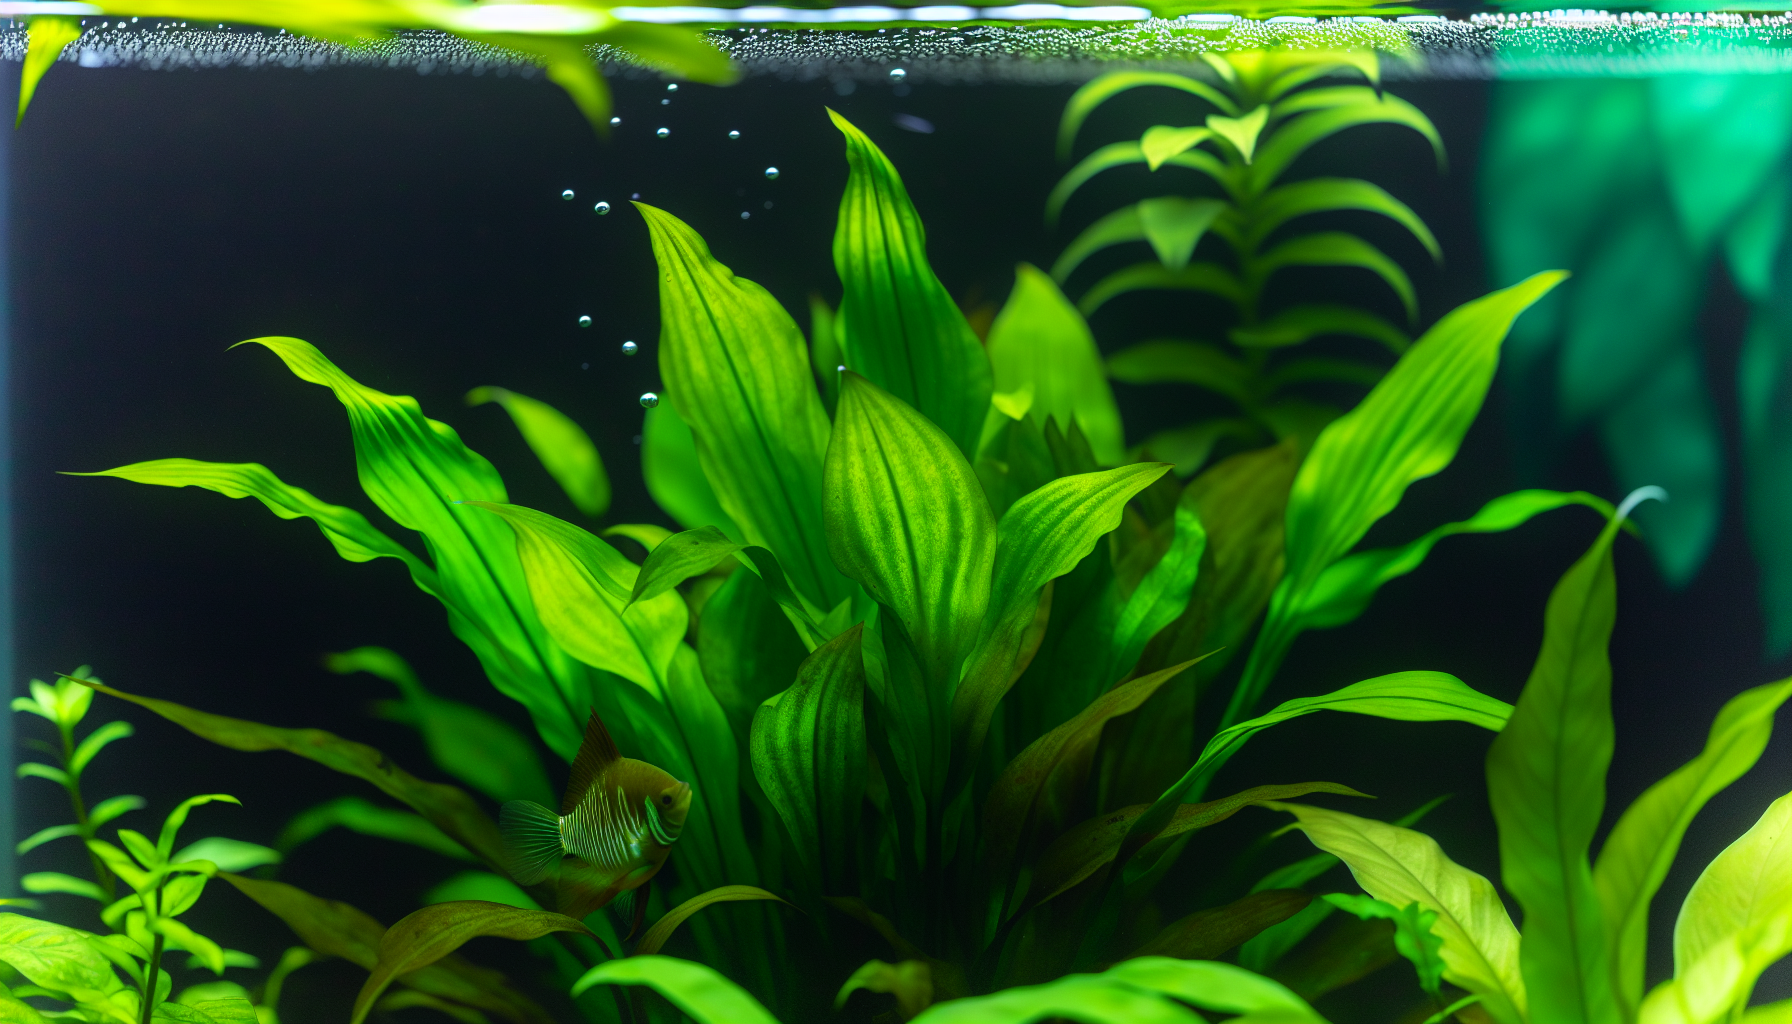 A lush green Amazon Sword plant in an aquarium